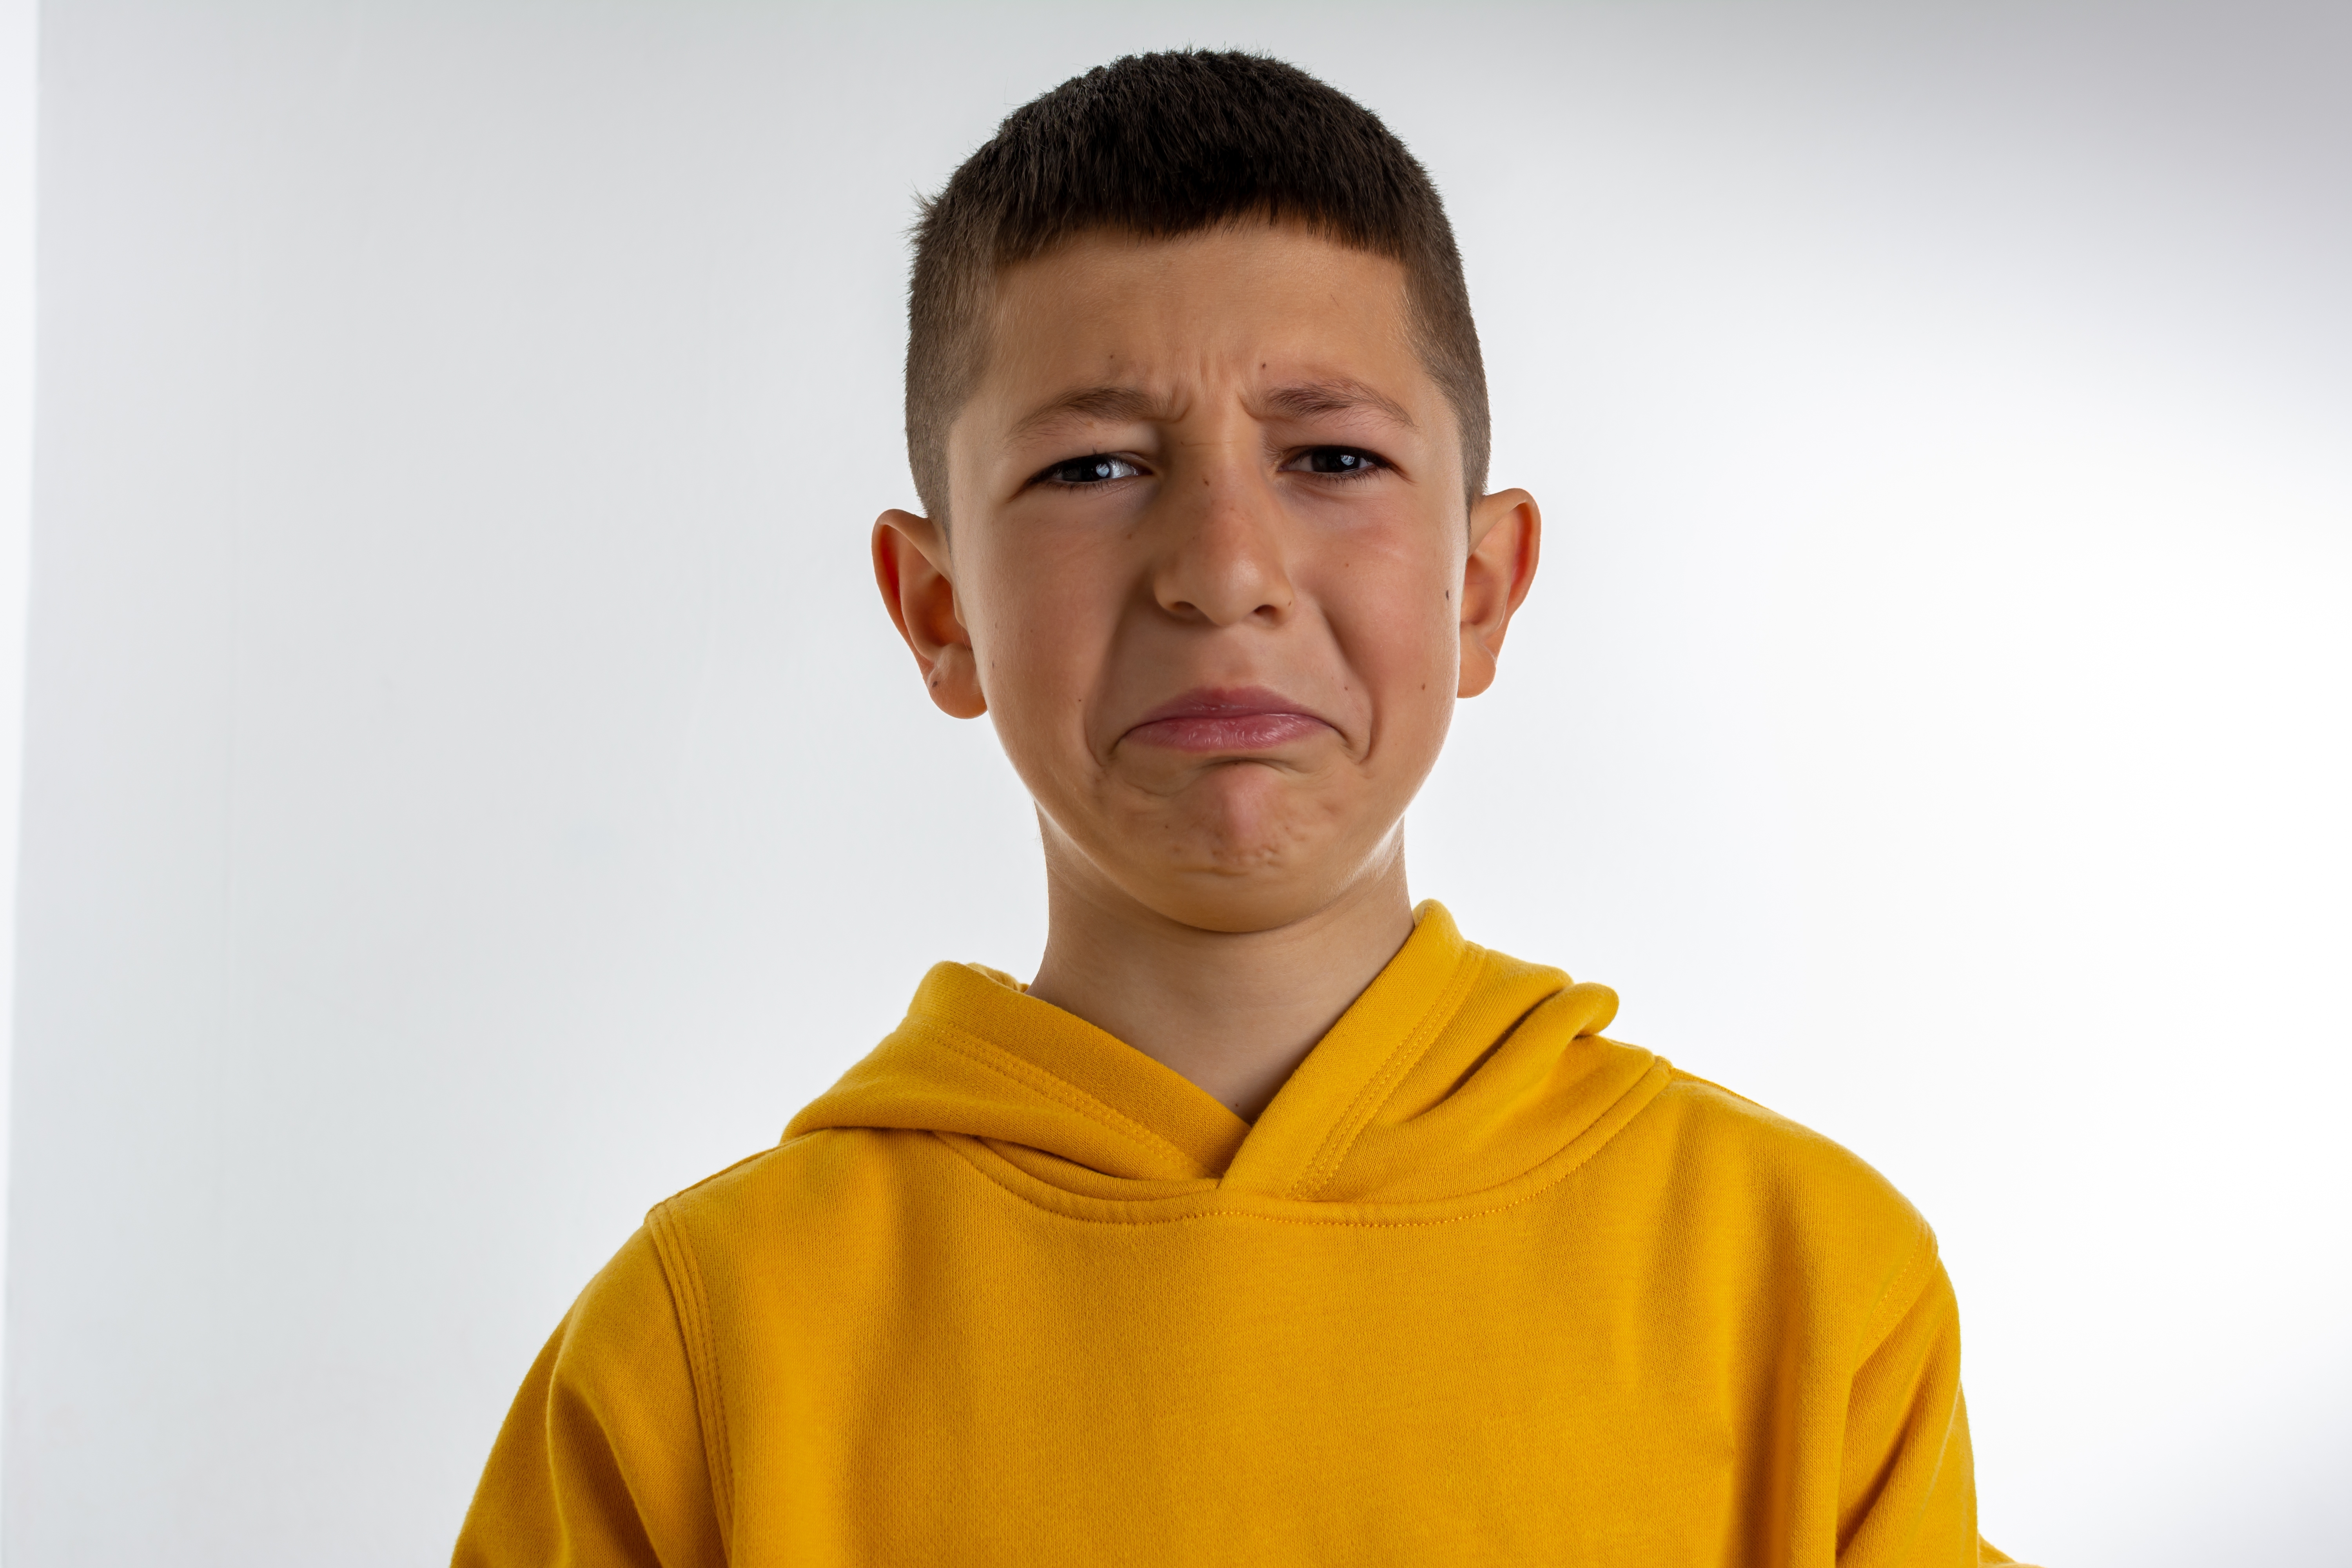 Ein kleiner Junge weint | Quelle: Shutterstock